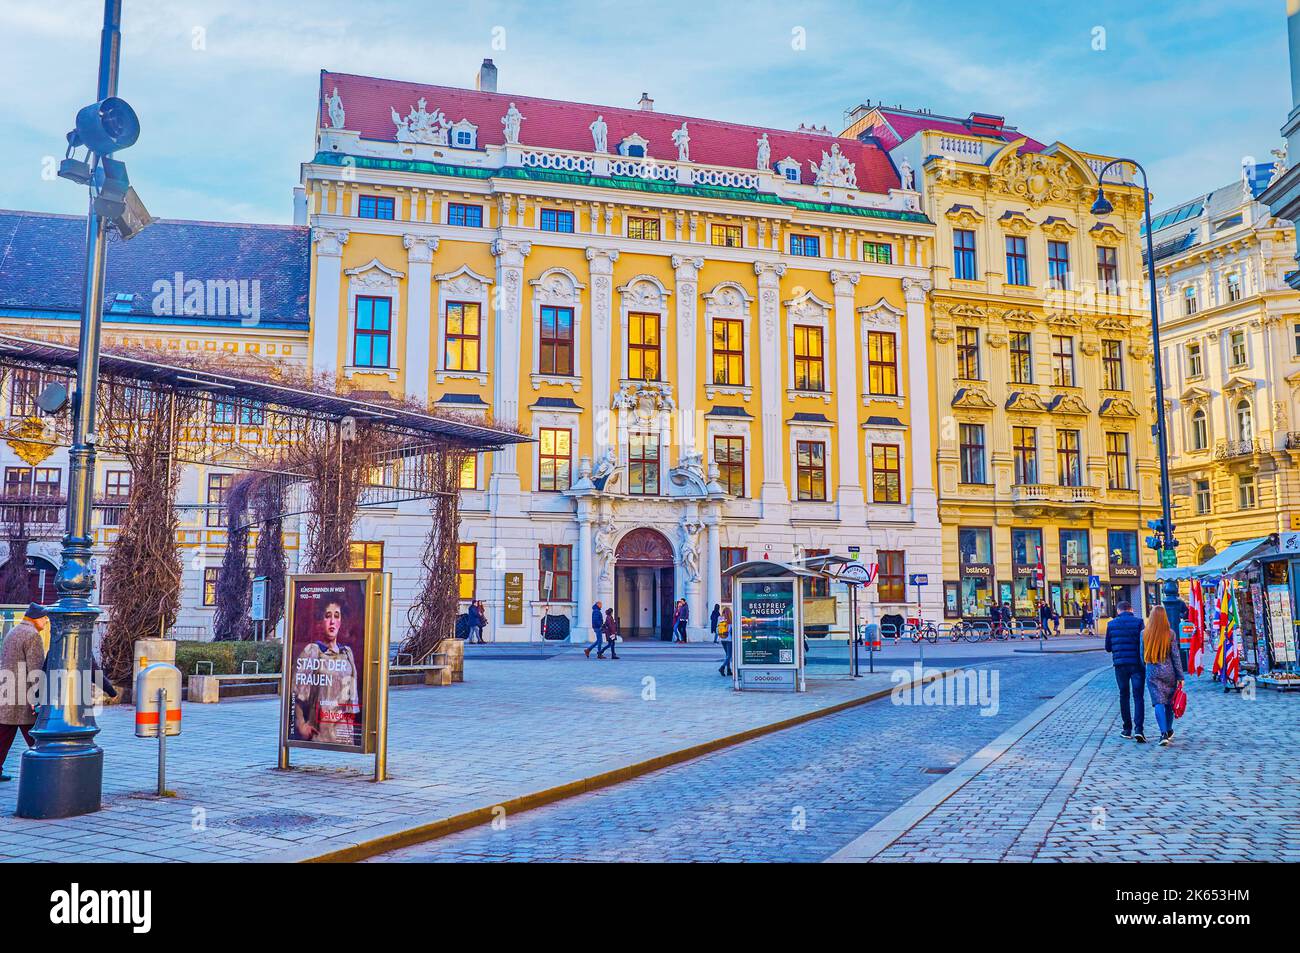 VIENNA, AUSTRIA - 17 FEBBRAIO 2019: Scena urbana nel cuore della città vecchia, nei dintorni di palazzi e palazzi storici, il 17 febbraio a V Foto Stock